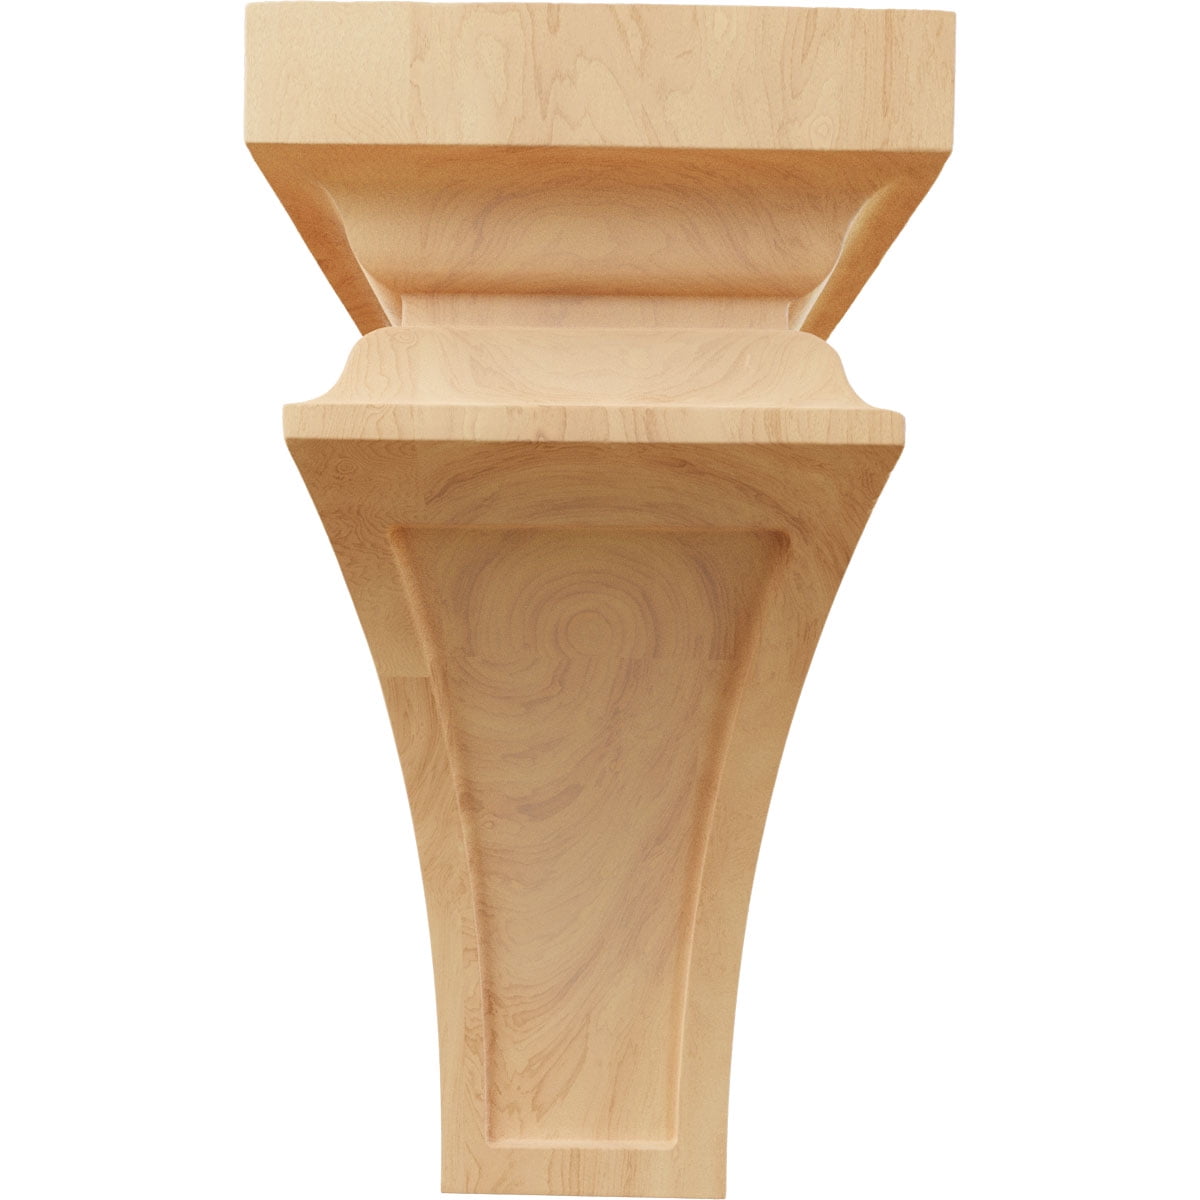 New Red Oak Wood Braid Corbel~Furniture Hdwe.~Woodworking~IM-CA-87-RO 